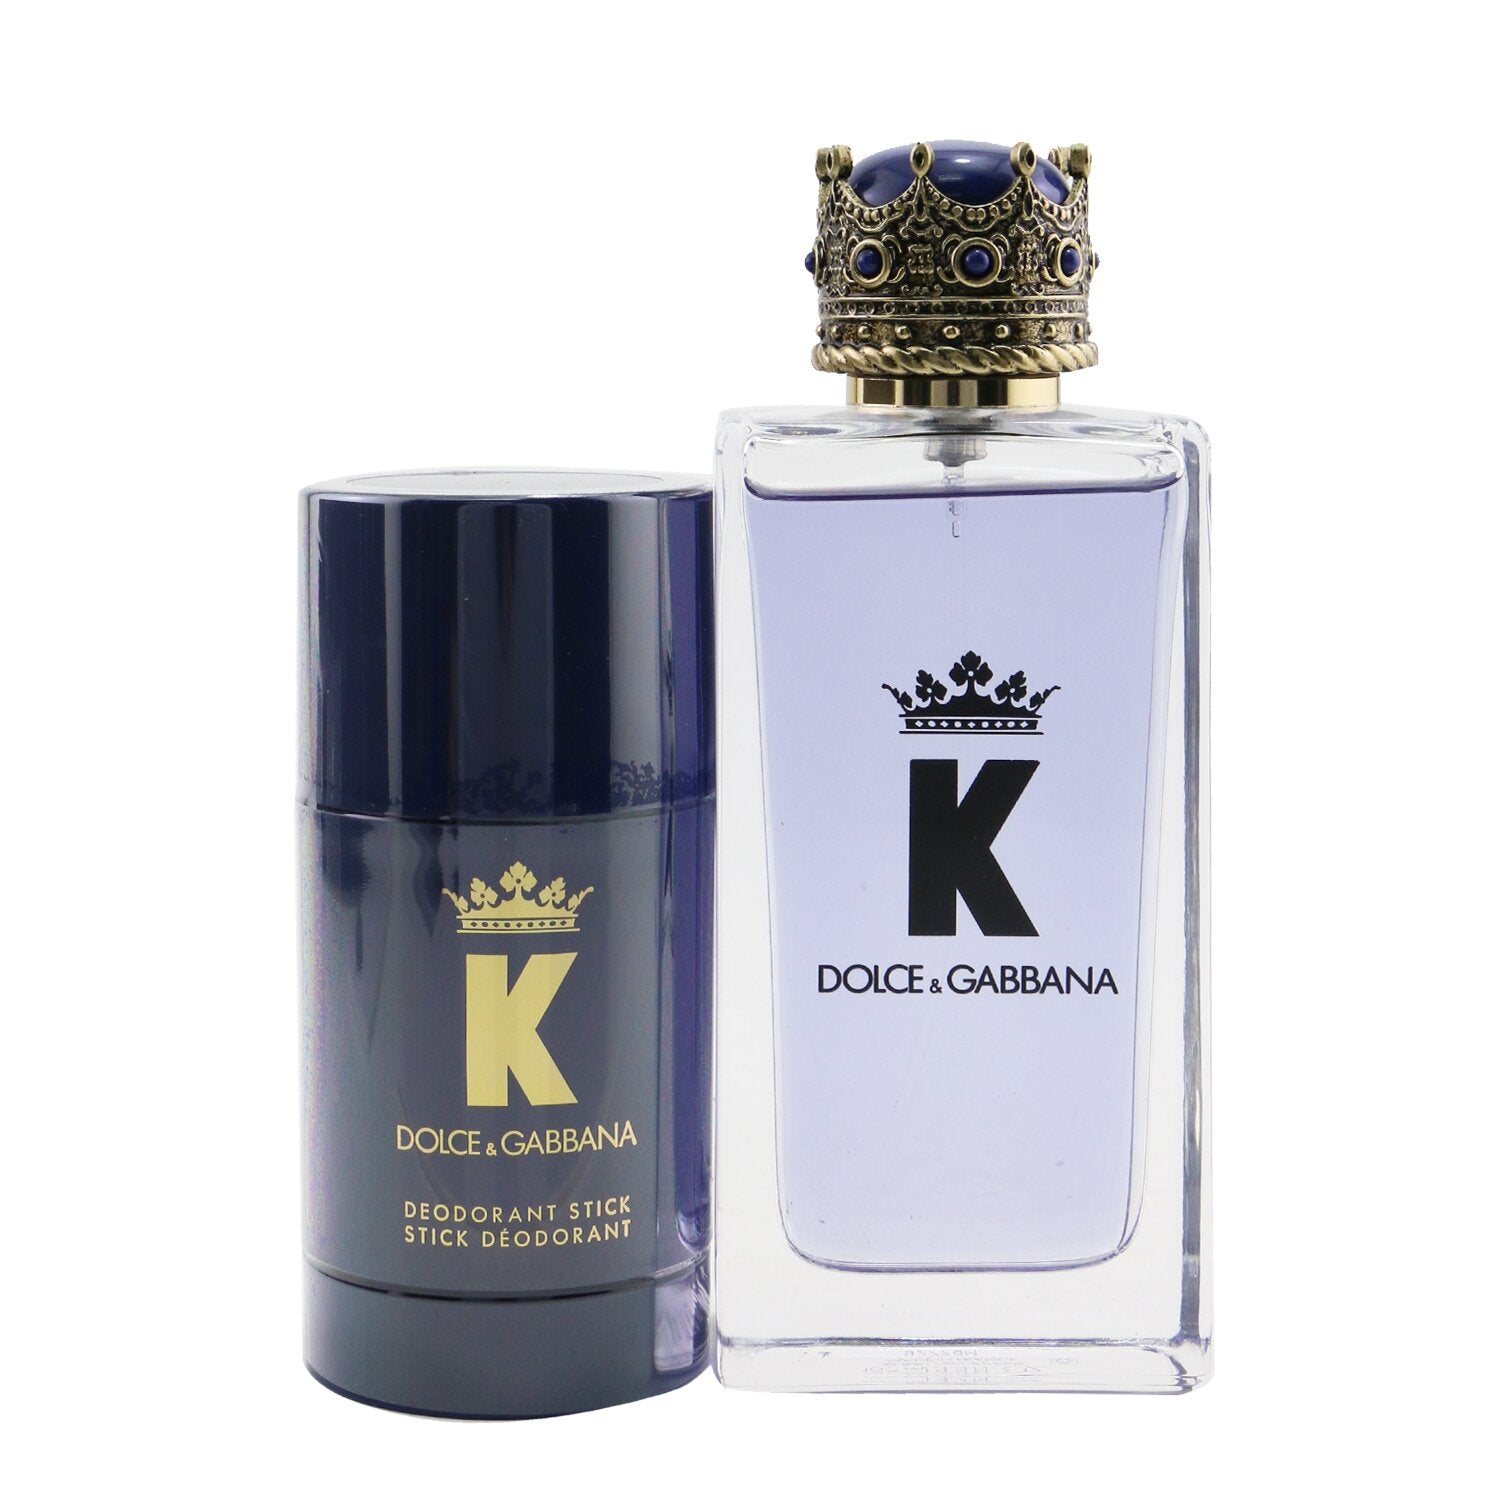 Buy Authentic Chanel Mini Coffrets Parfums Pour Homme 3x, Discount Prices